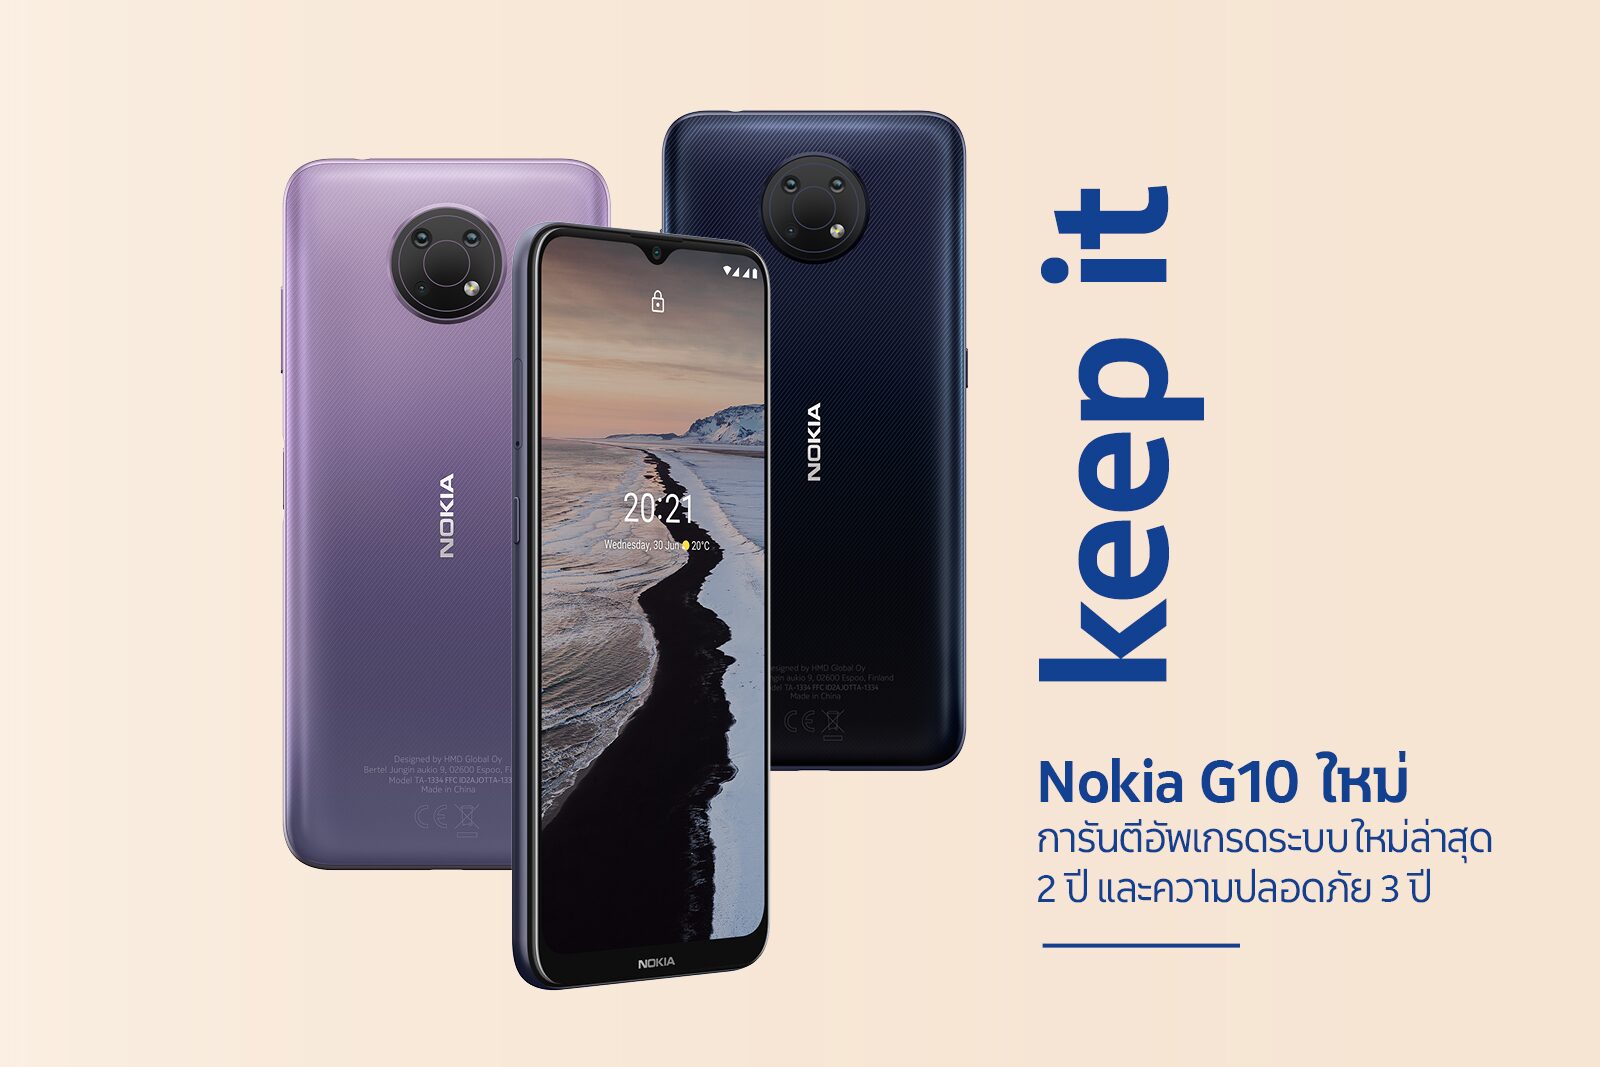 Nokia G10 วางจำหน่ายในไทย 1 ก.ค. เจาะตลาดสมาร์ทโฟนระดับกลาง